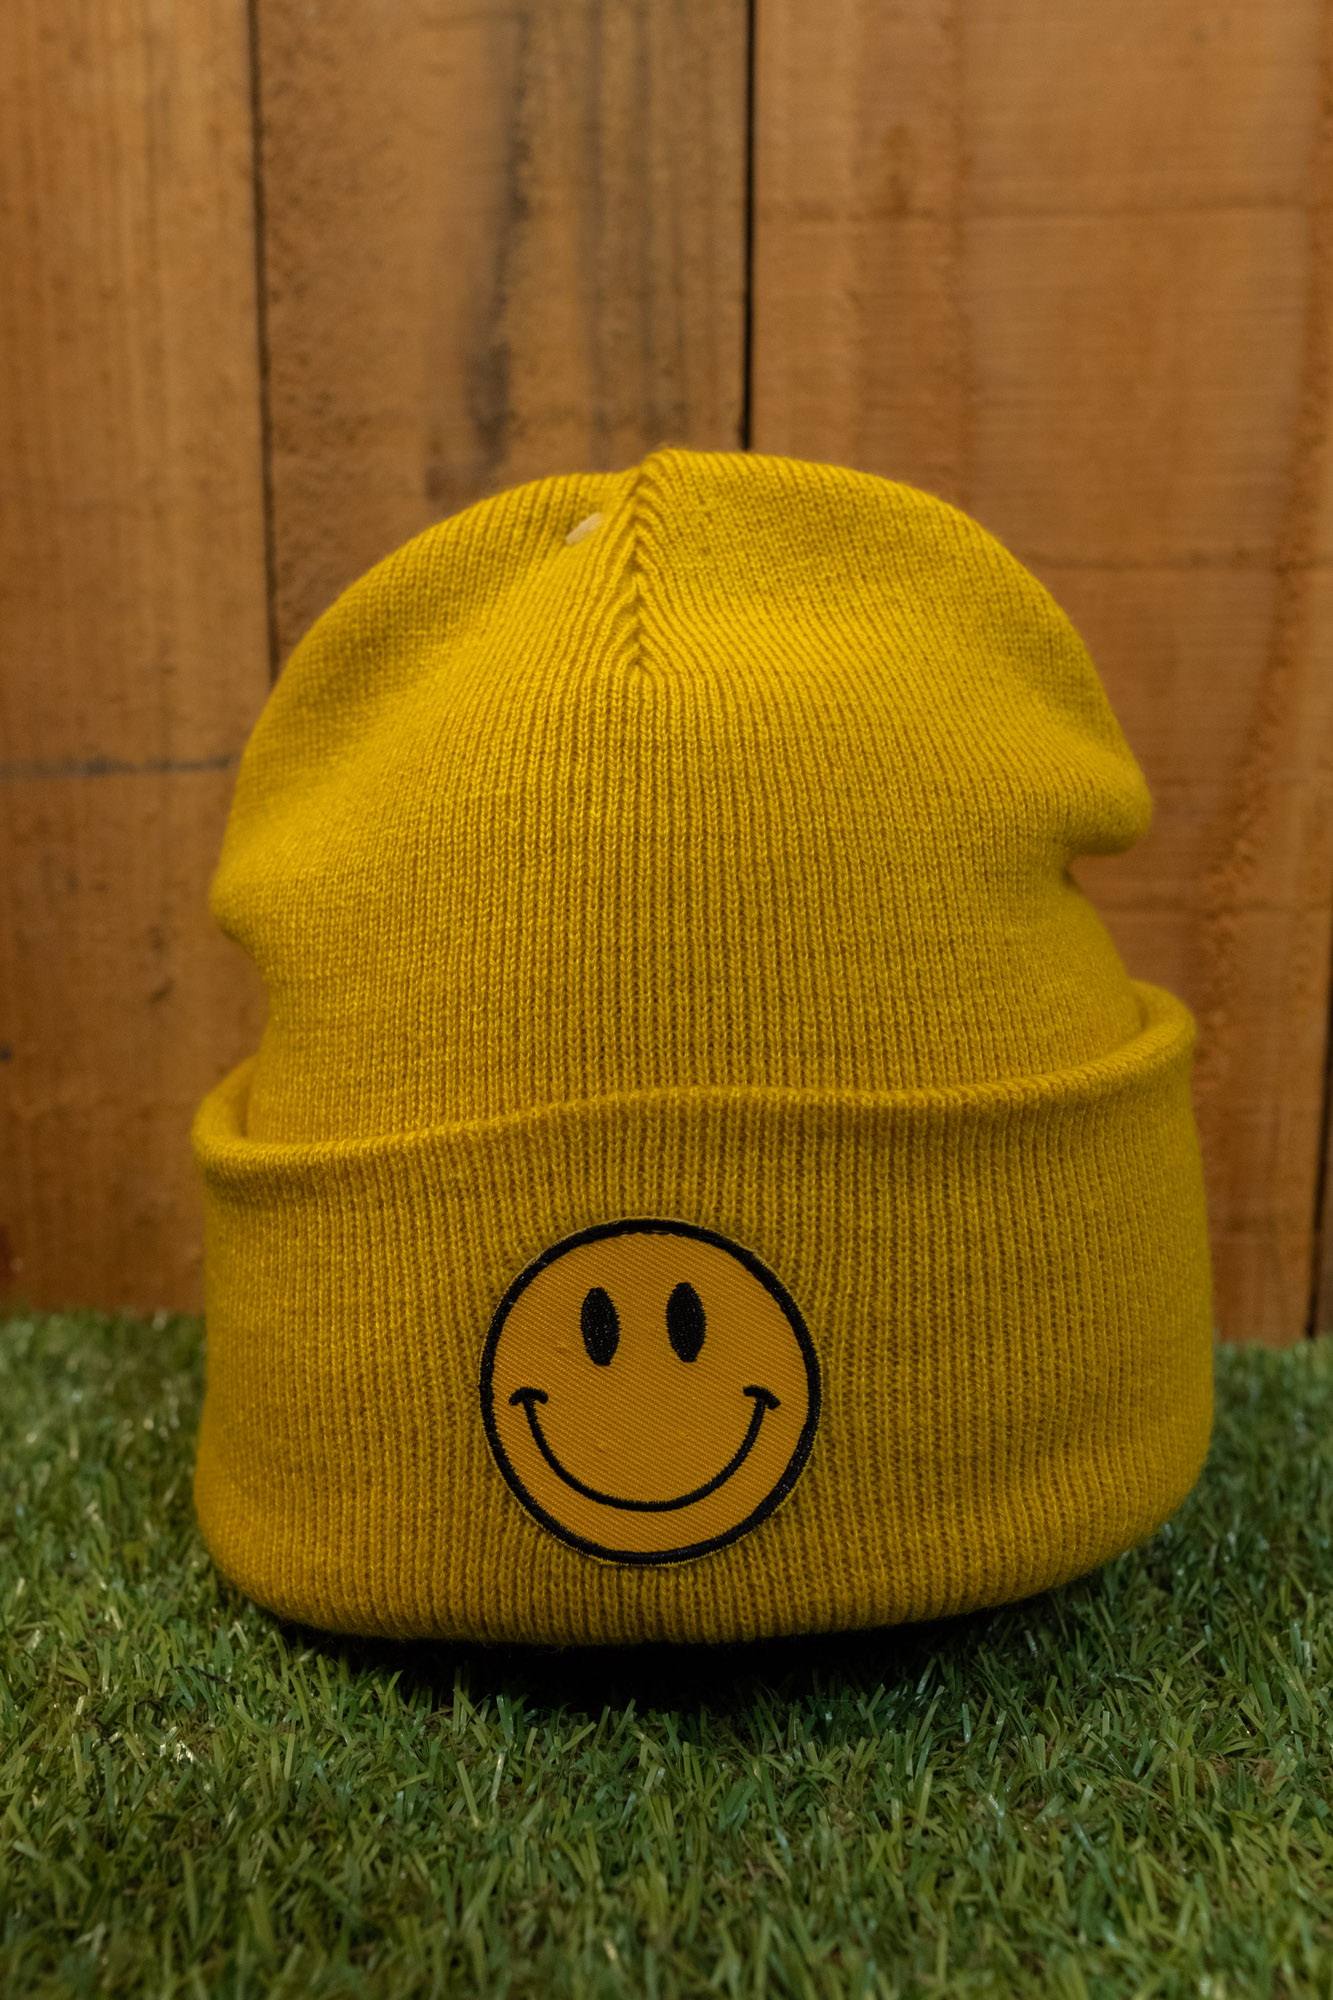 Photo bonnet smiley jaune